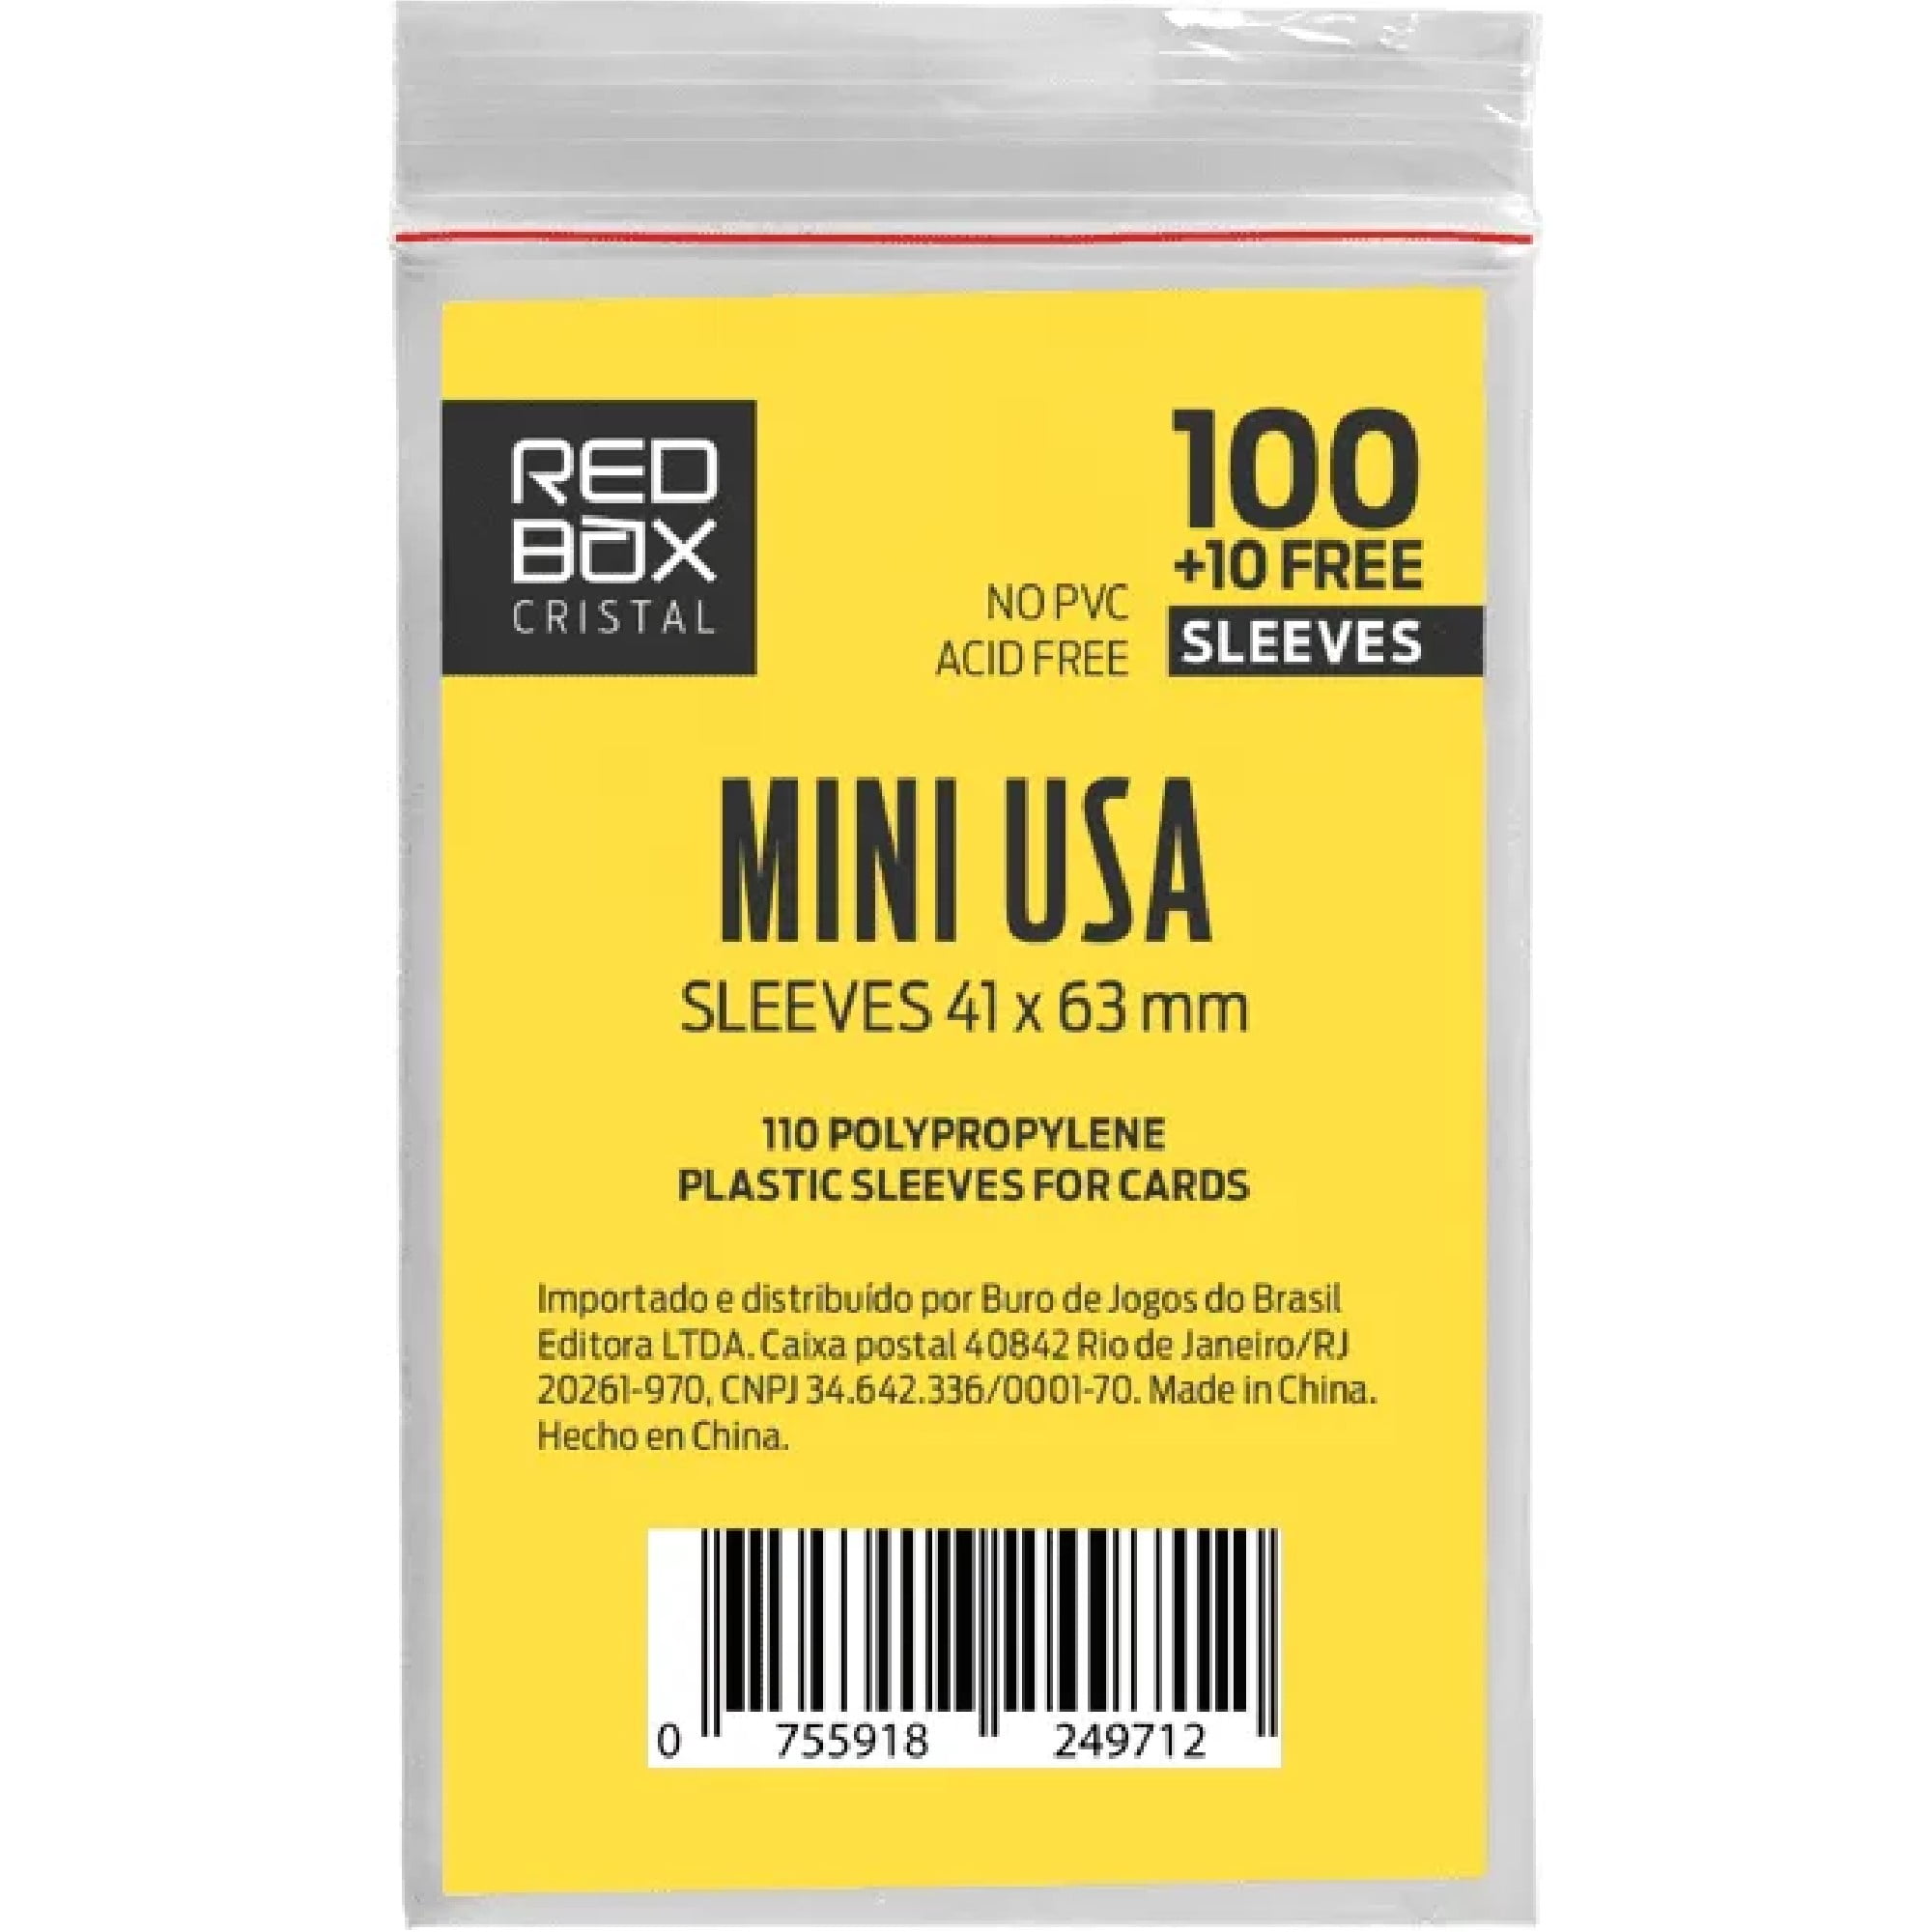 Sleeve Cristal: MINI-USA (41x63mm) Redbox